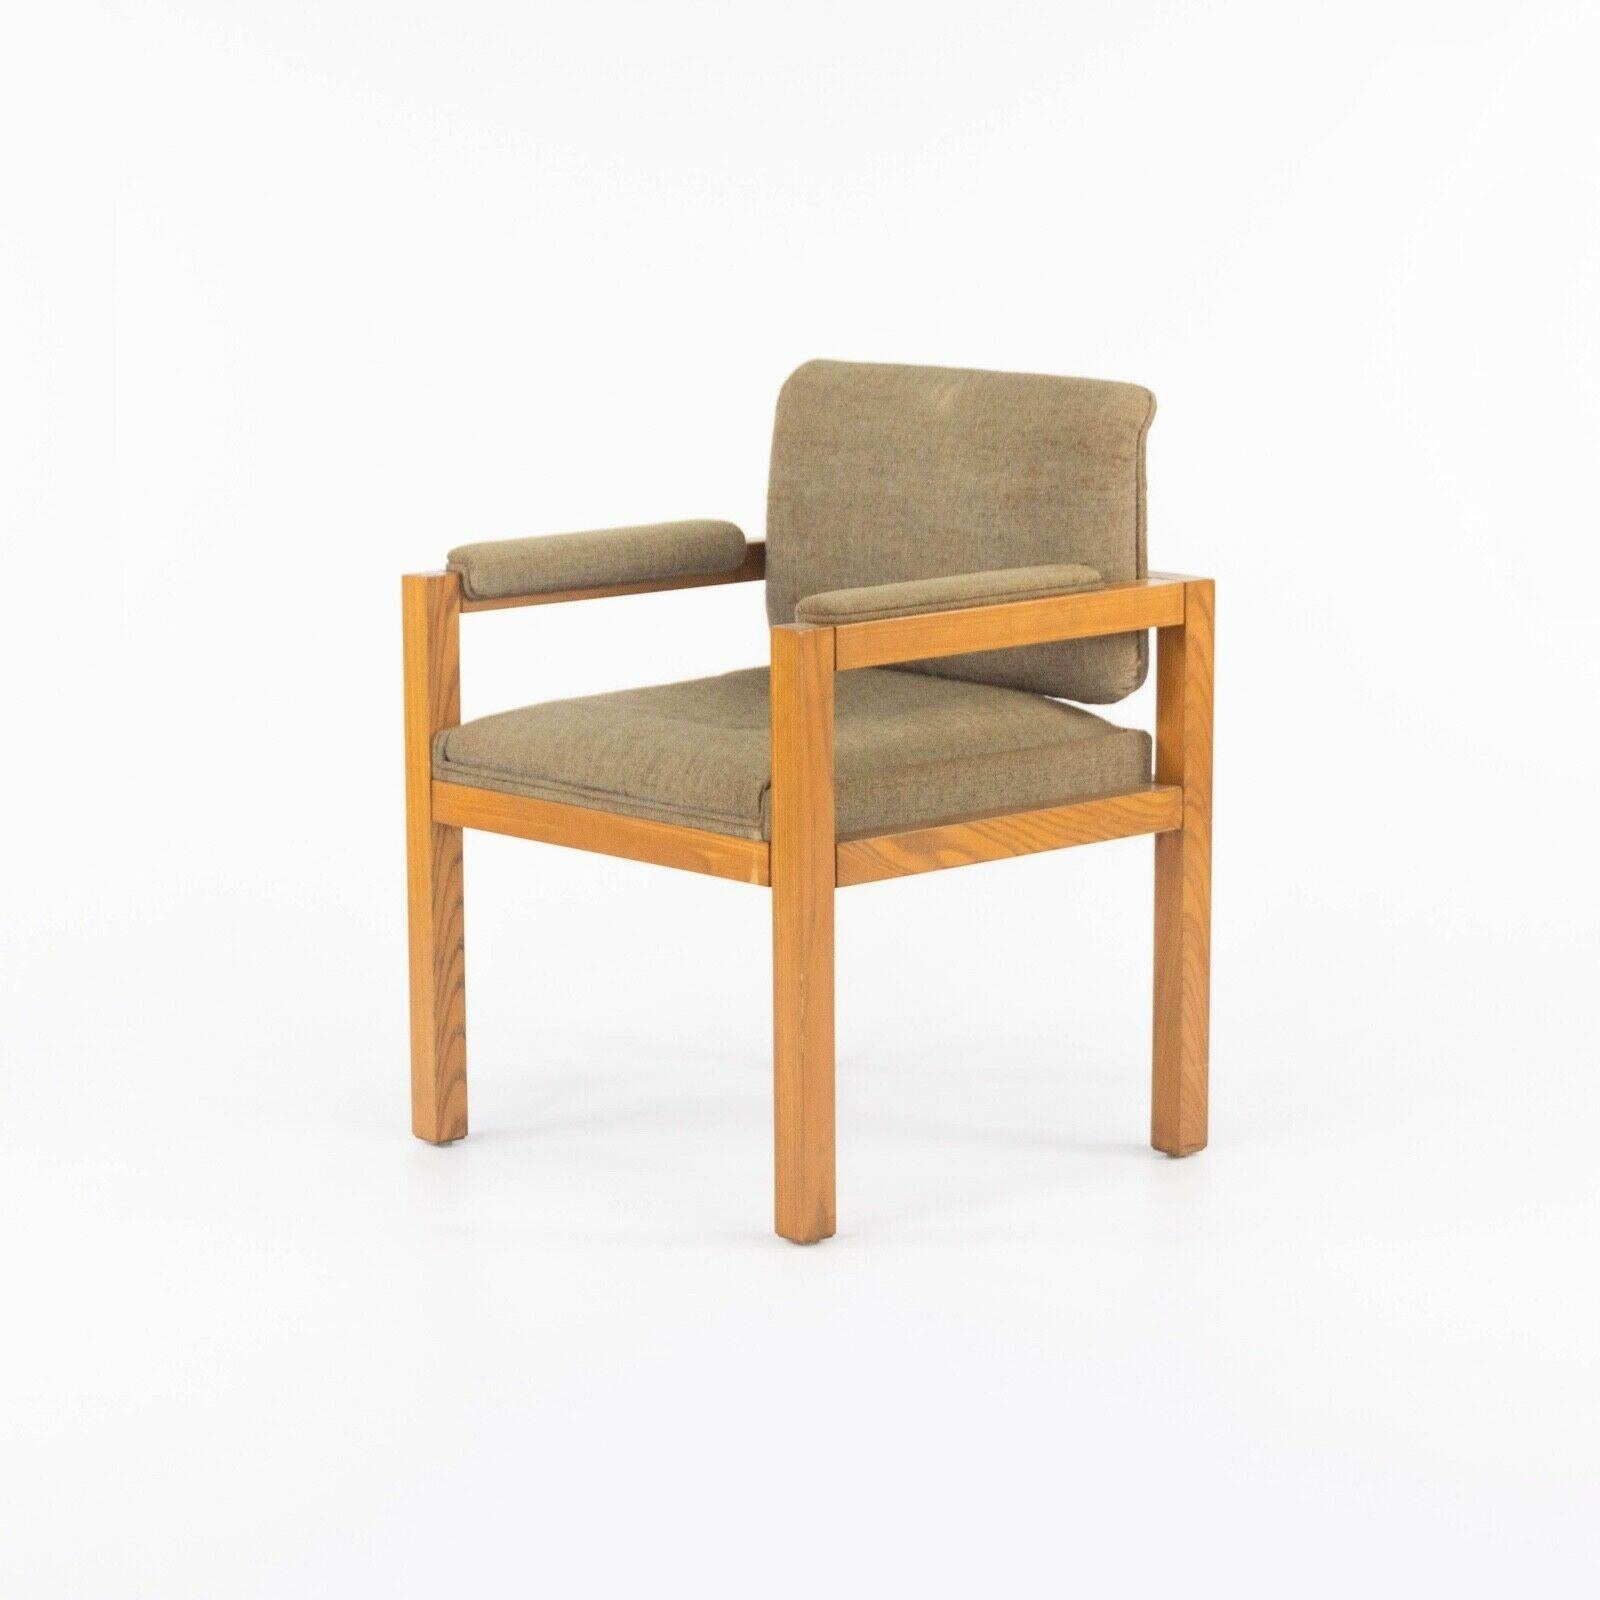 Zum Verkauf steht ein um 1975 produzierter Sessel aus Eiche und dunkelbraunem Stoff, der von dem bekannten Architekten und Möbeldesigner Warren Platner entworfen wurde. Diese Arbeit war Teil einer Serie, die Platner in den 1970er Jahren für CI